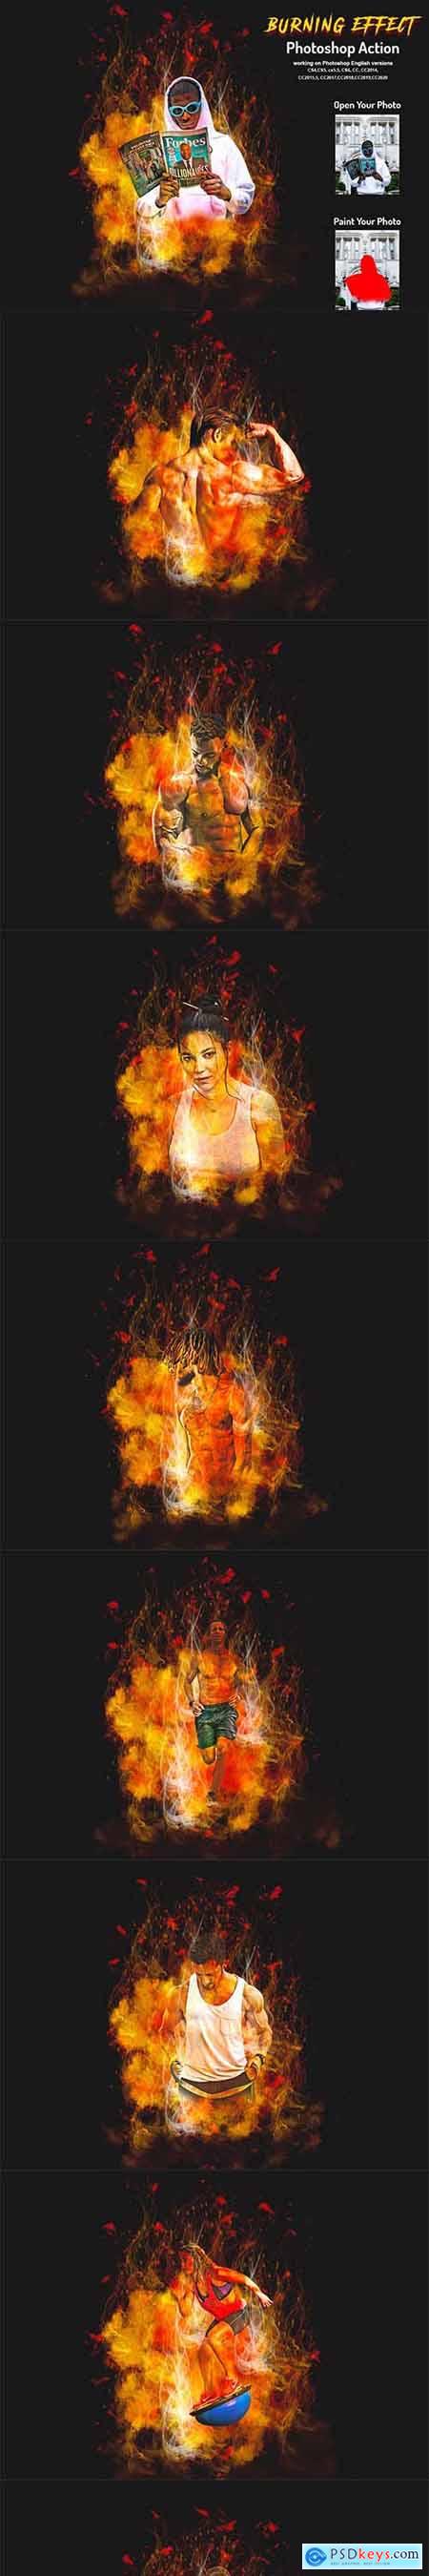 Burning Effect Photoshop Action 5999913